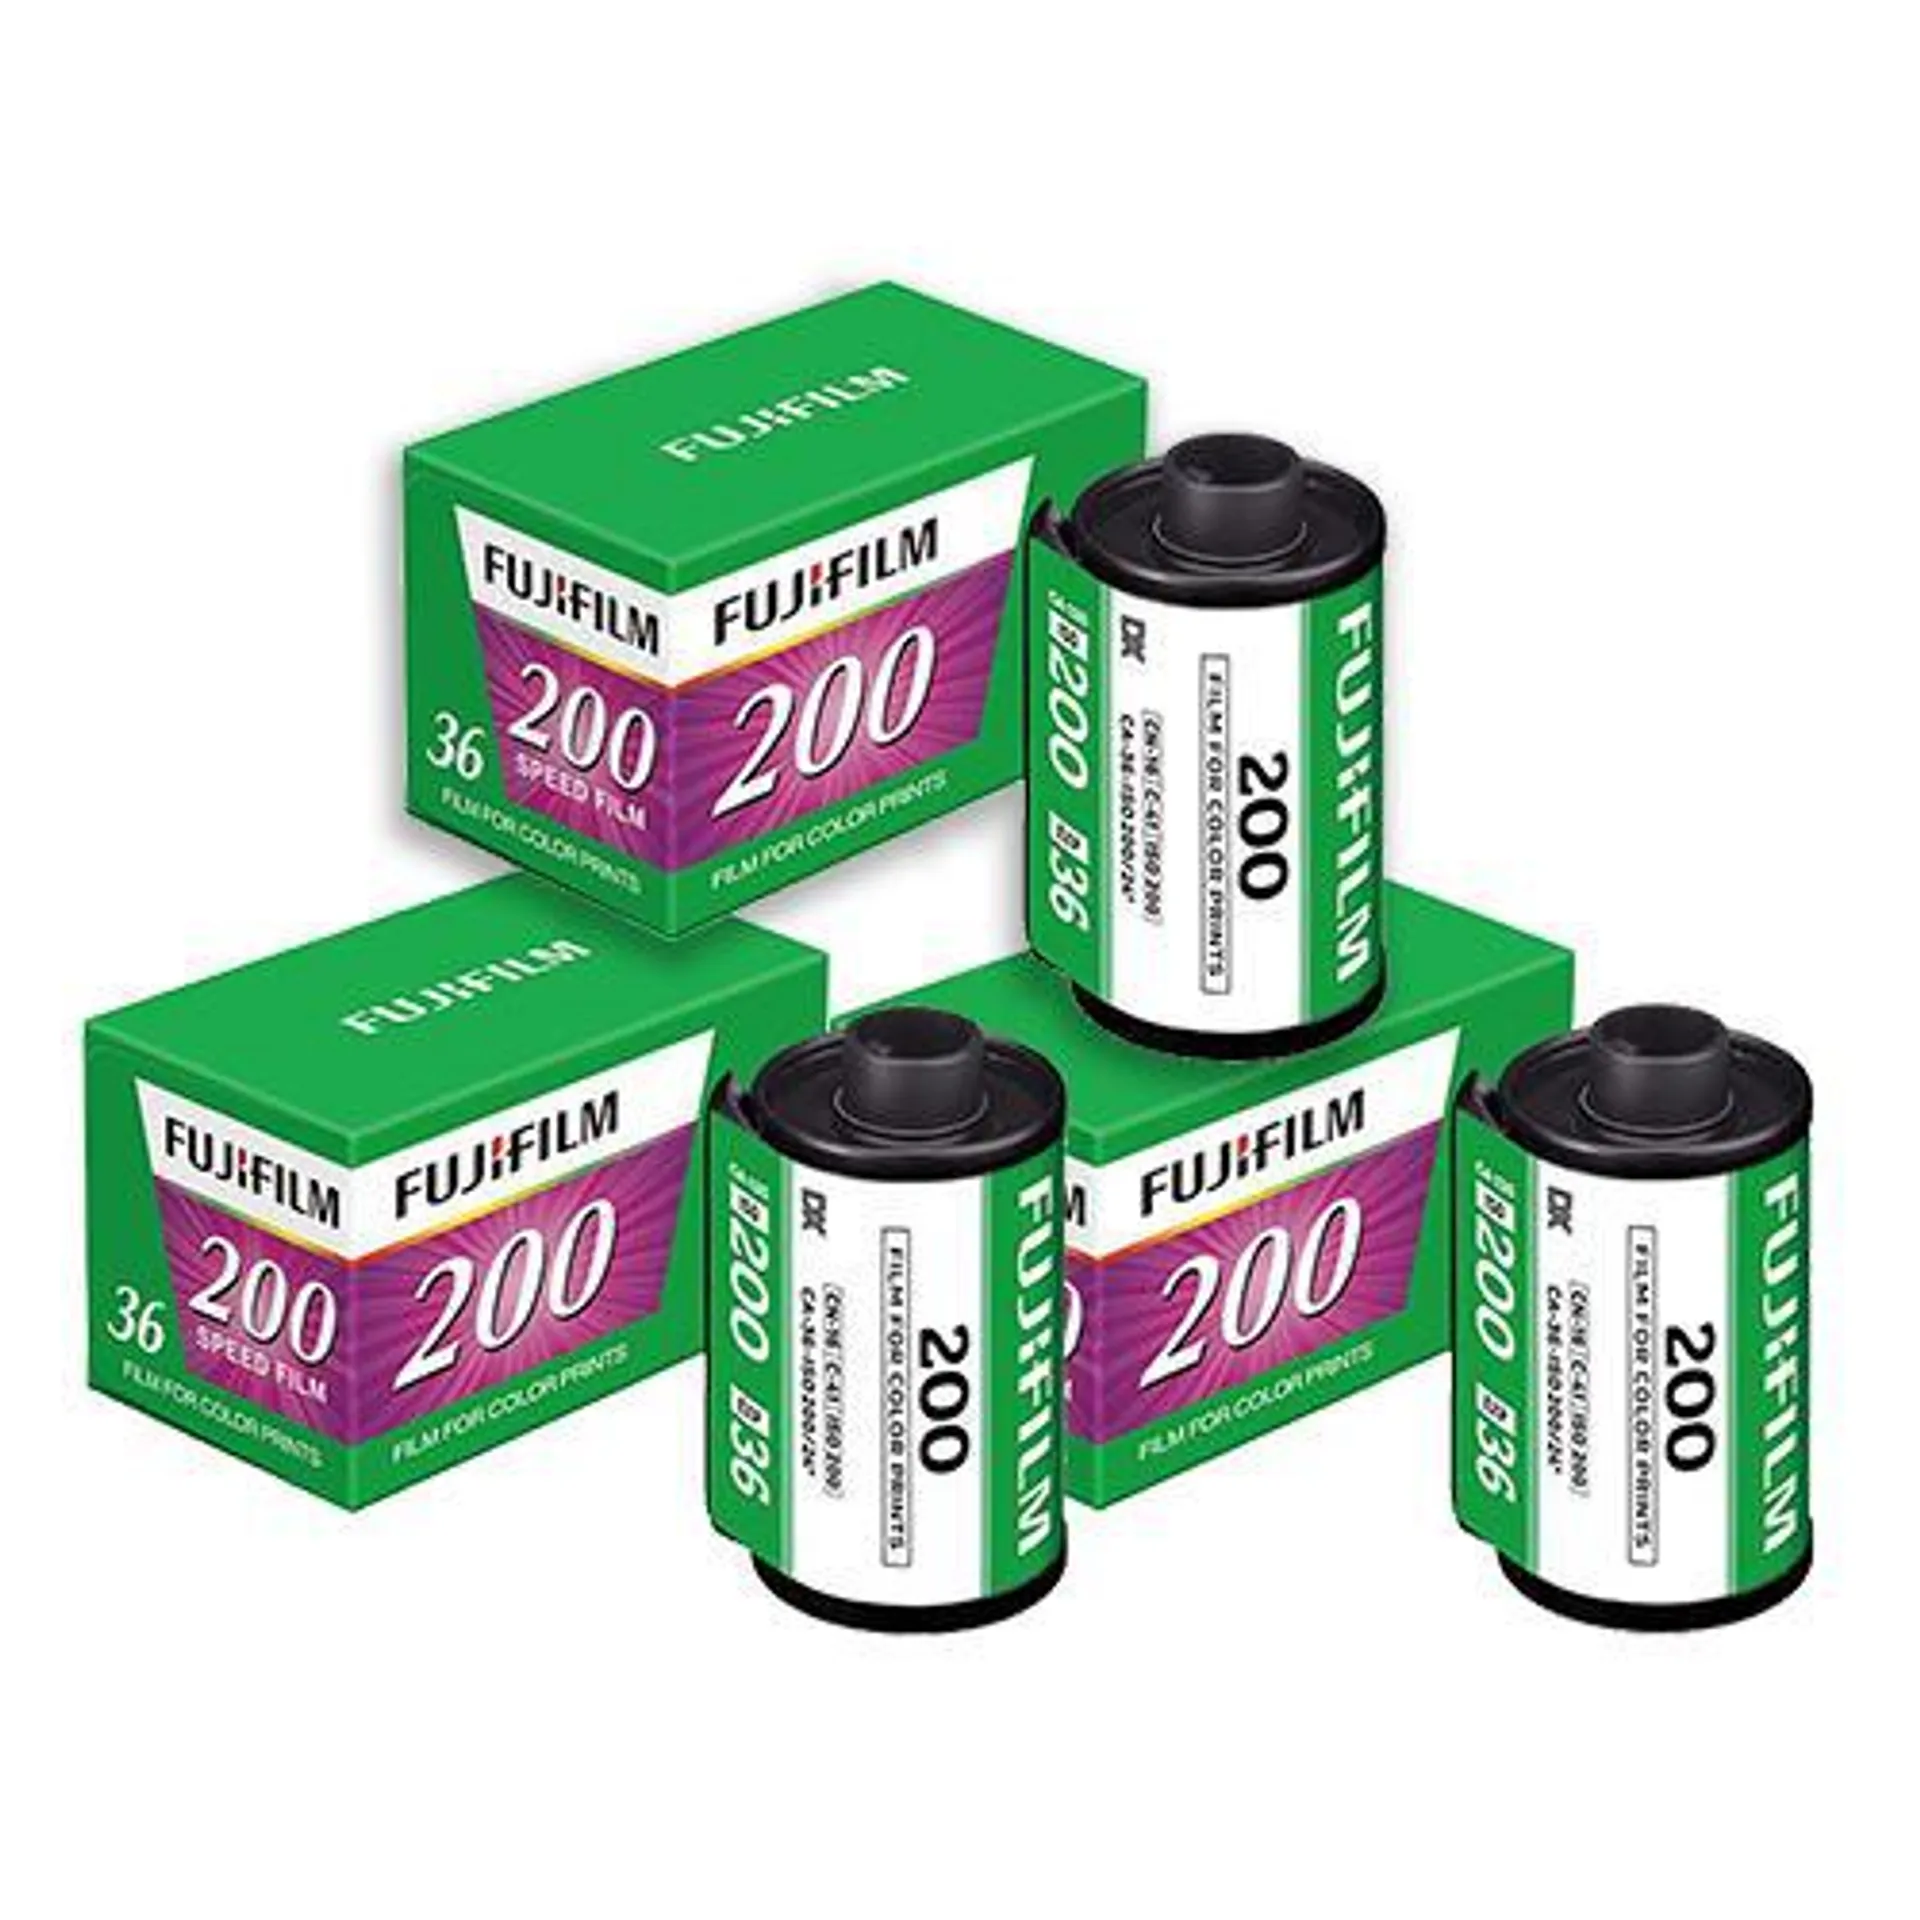 Fujifilm 200 35mm Colour Film 36 Exposures Pack of 3